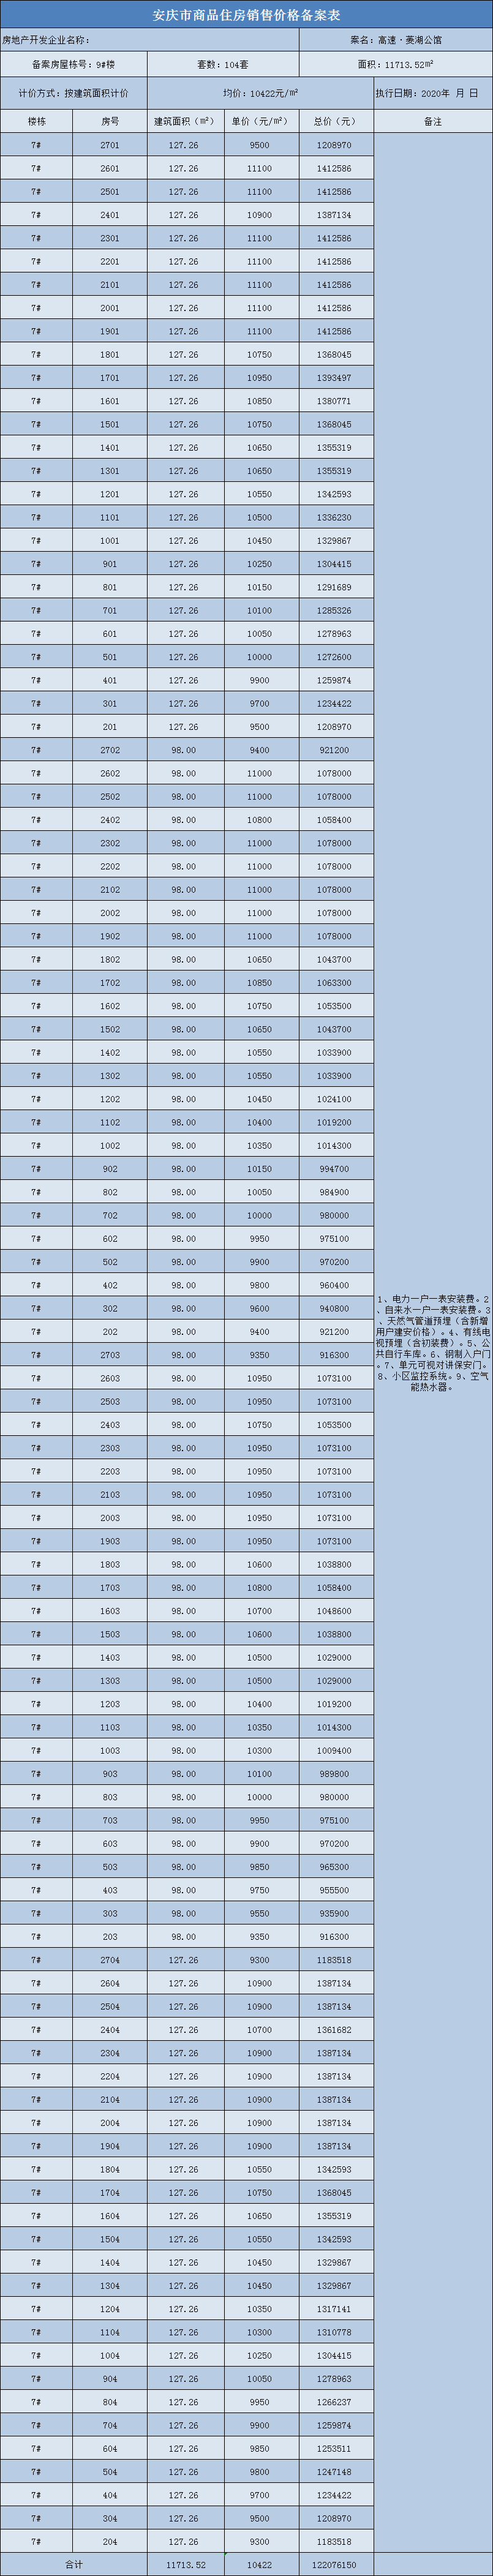 安庆高速·菱湖公馆共备案住宅244套，备案均价约为10582元/㎡